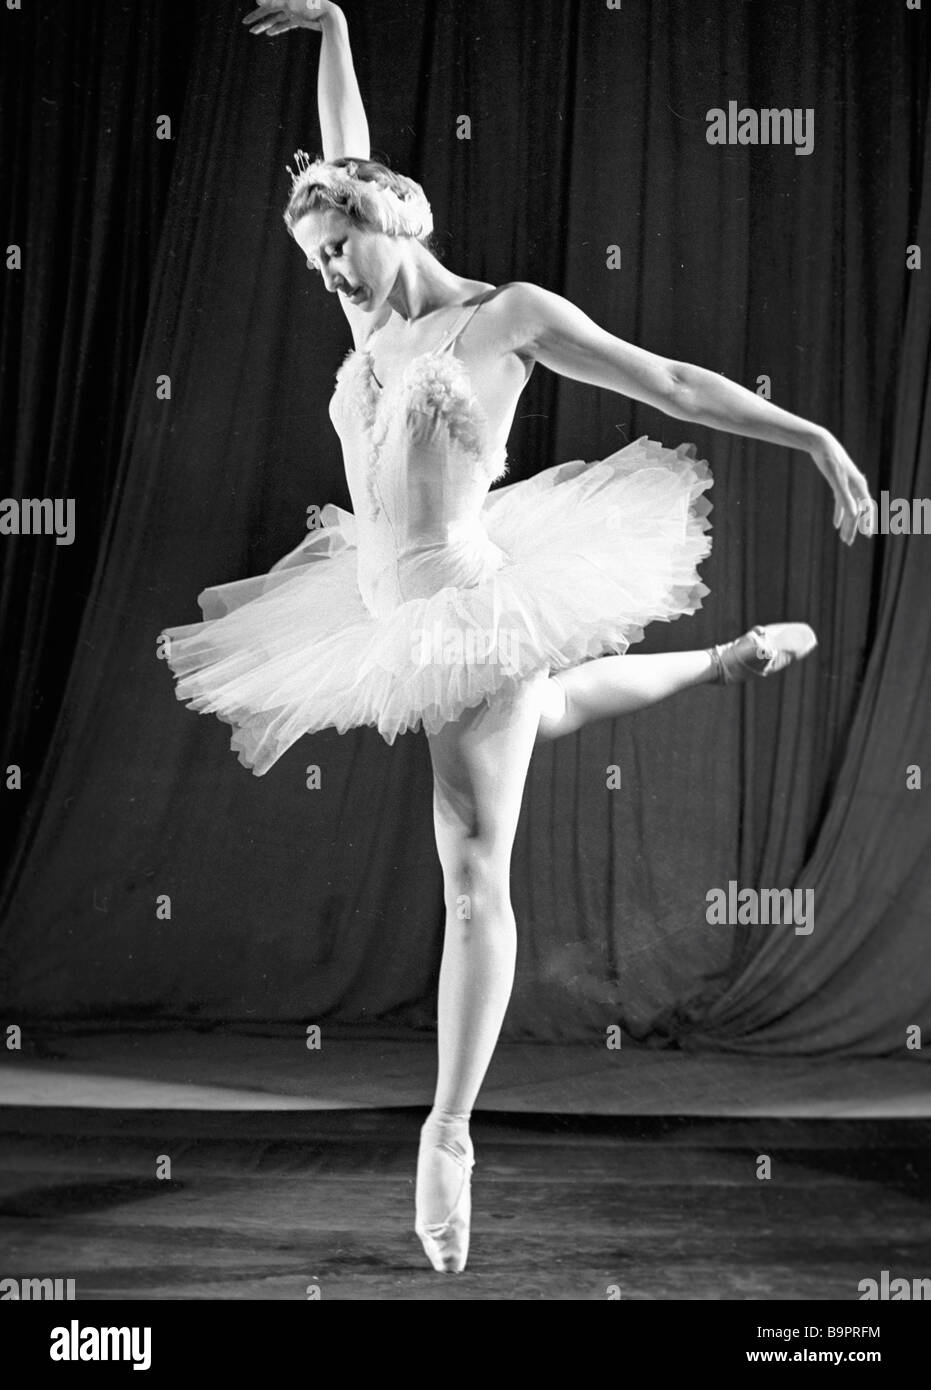 Maya Plisetskaya as Queen Odette in ballet Swan Lake Stock Photo -